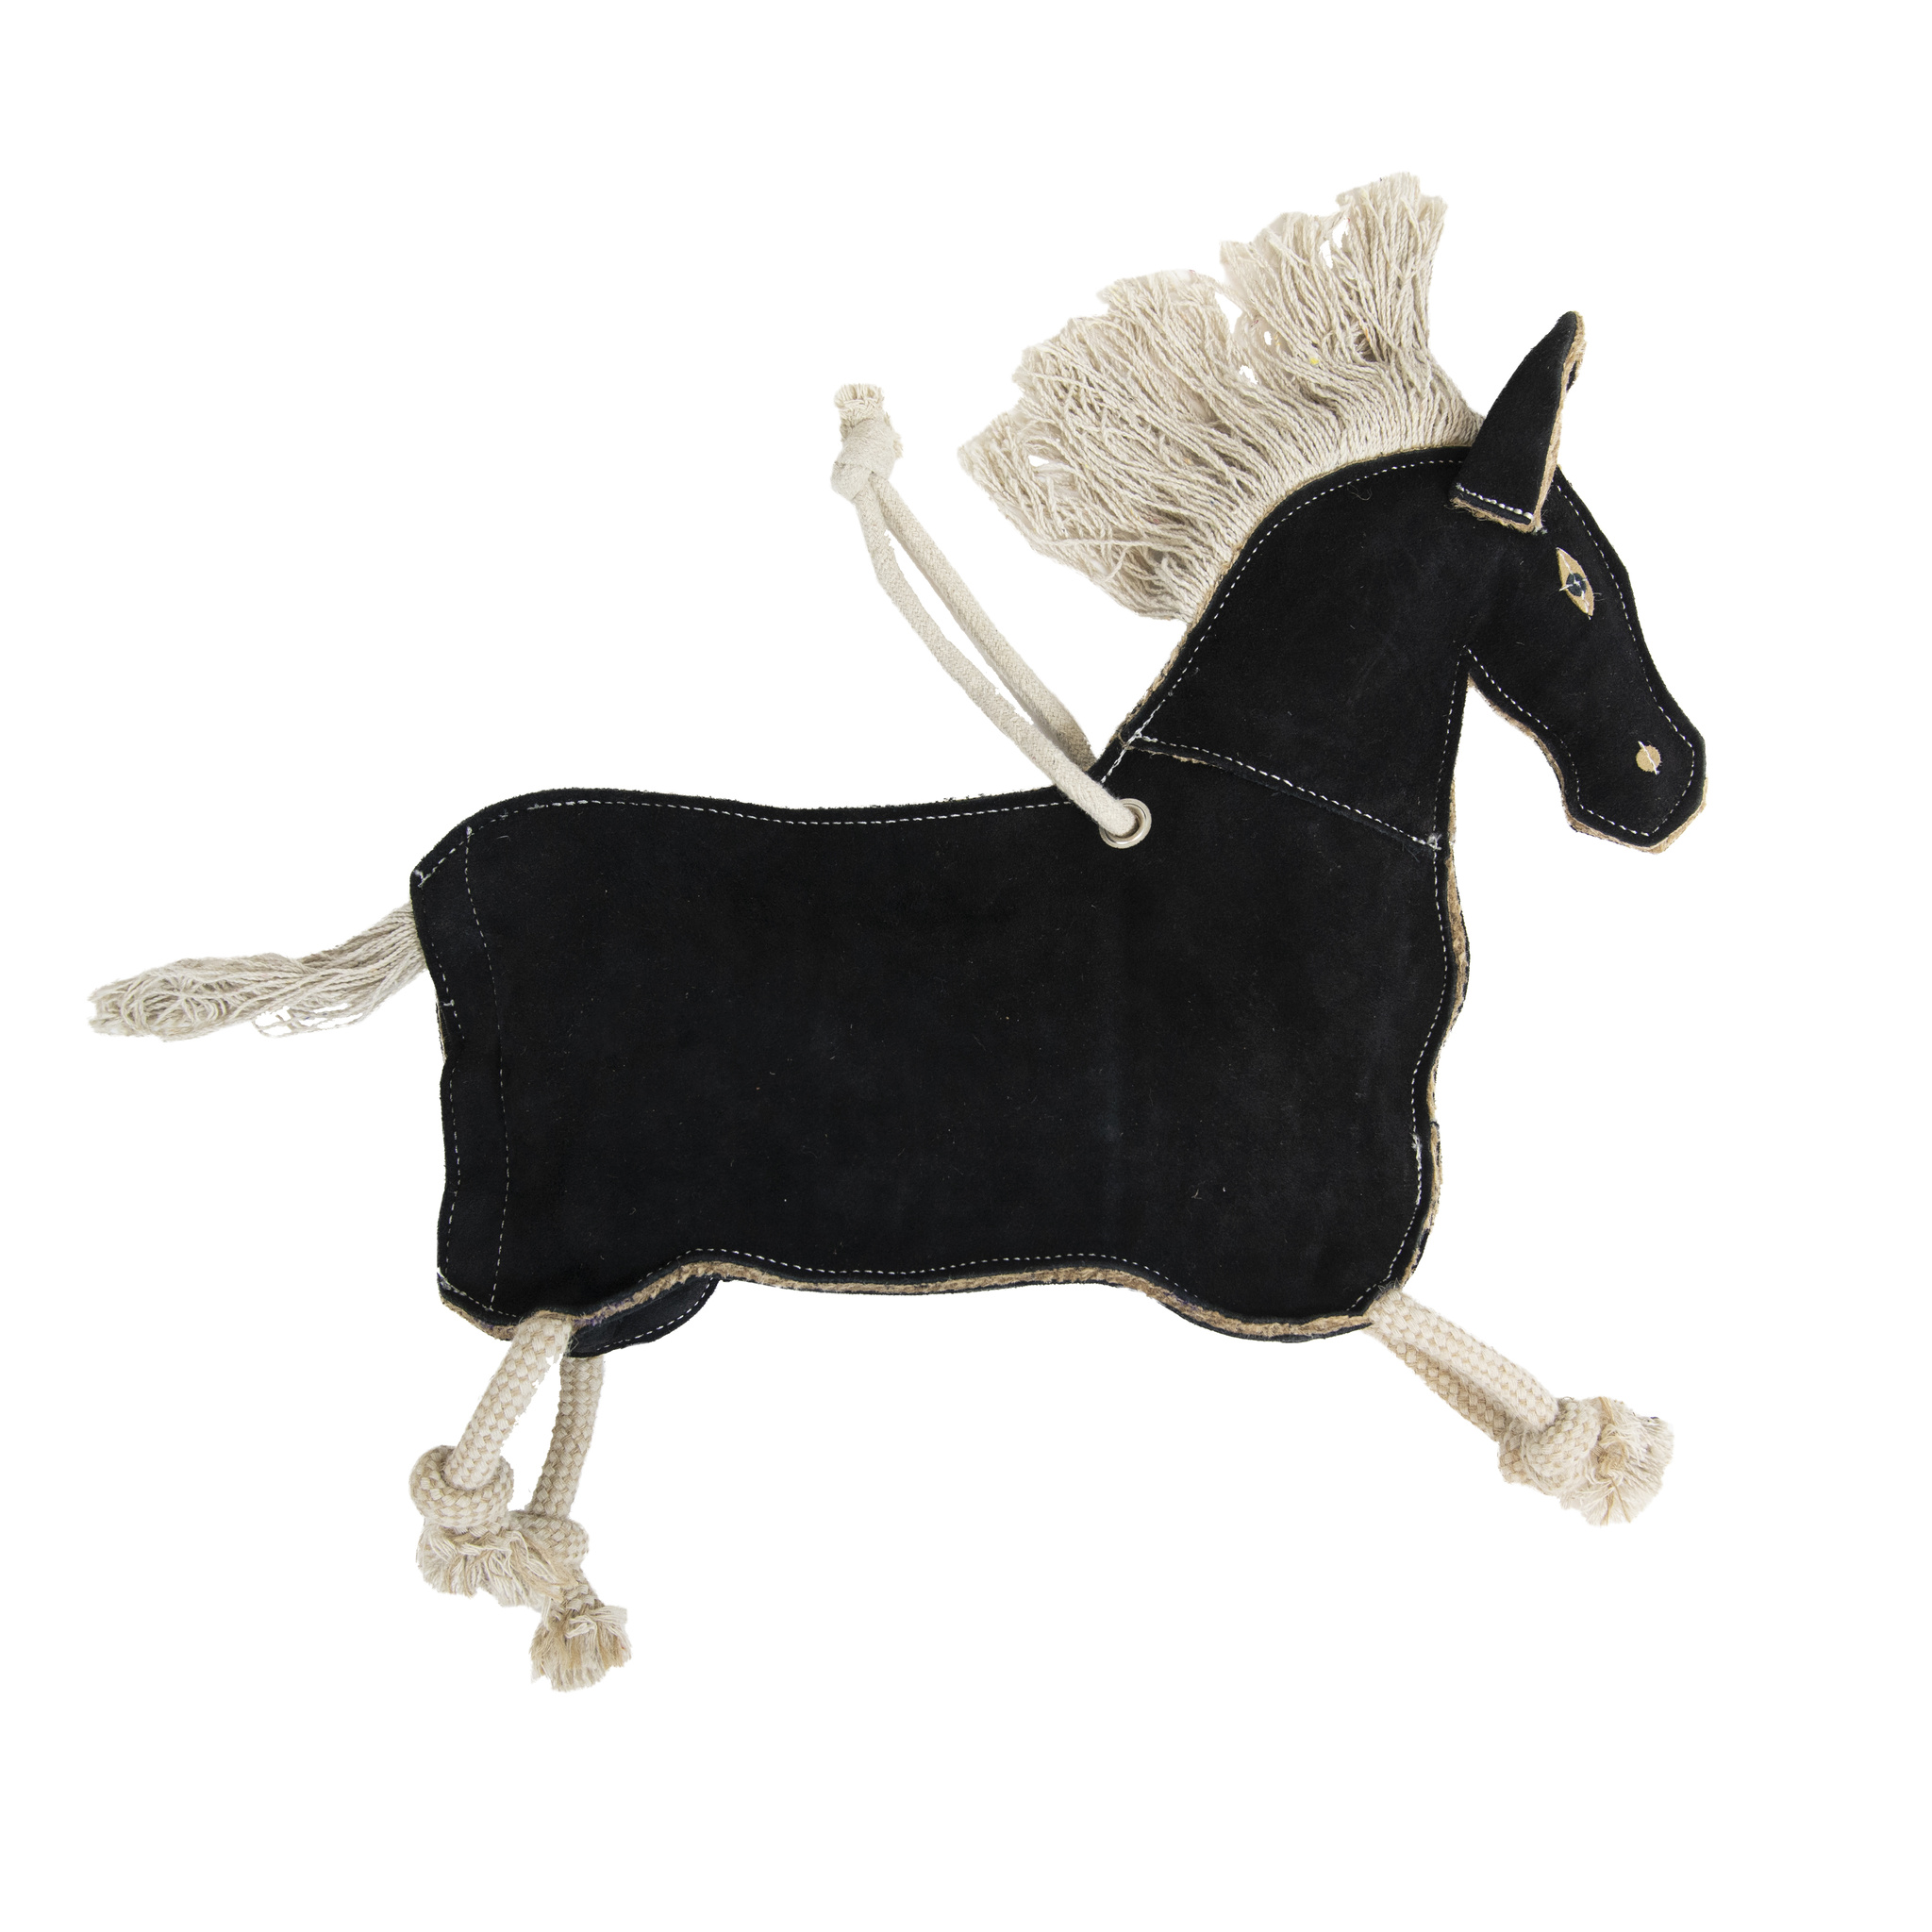 KENTUCKY Pferdespielzeug Relax Horse Toy Pony - black - Stck. - 1